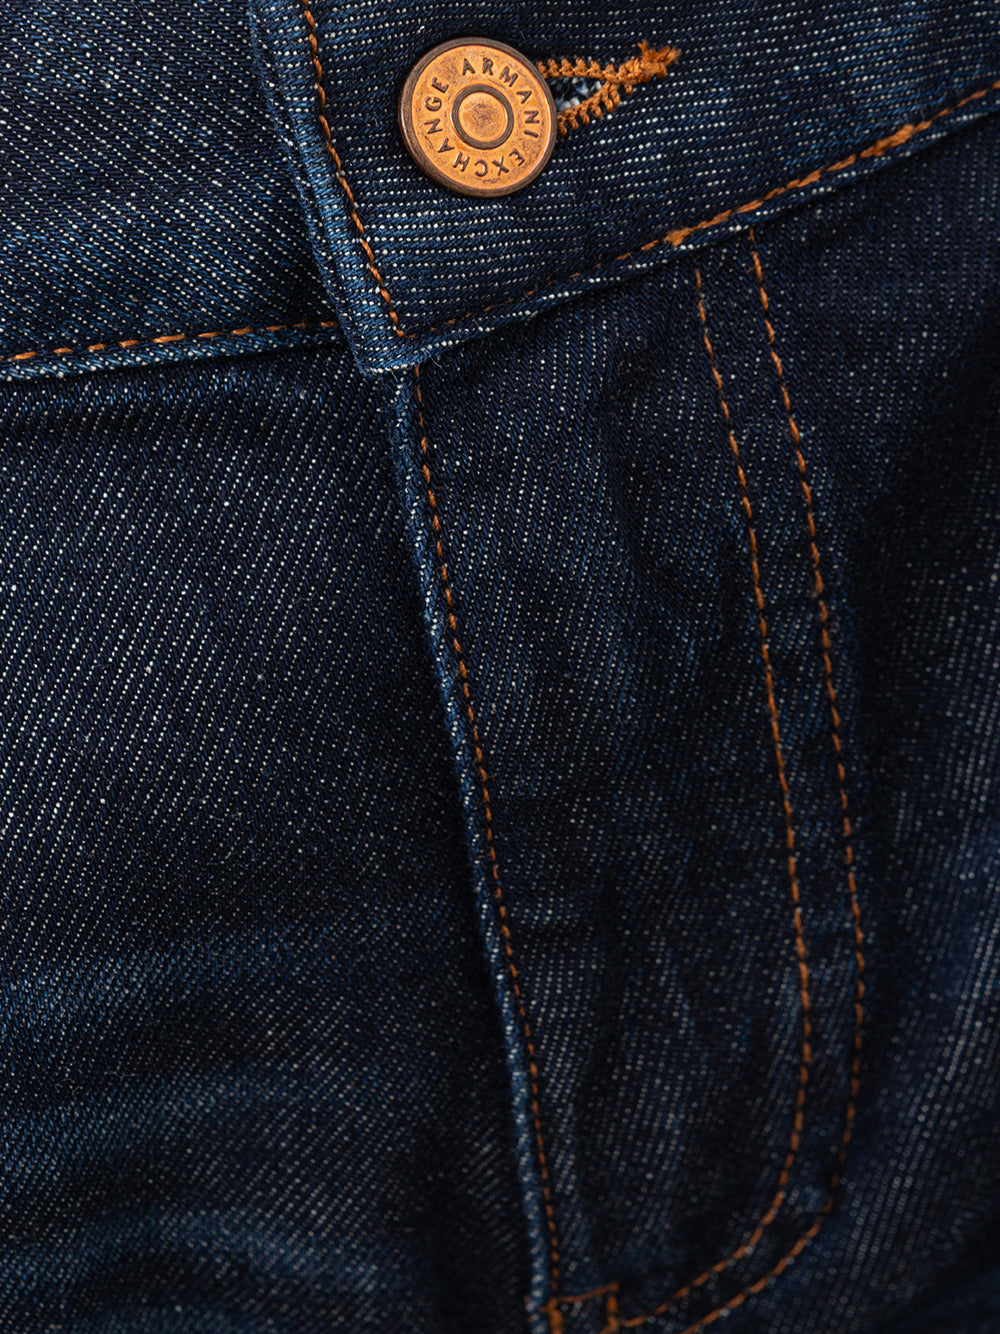 Armani Exchange Five Pocket Jeans Bermuda Shorts